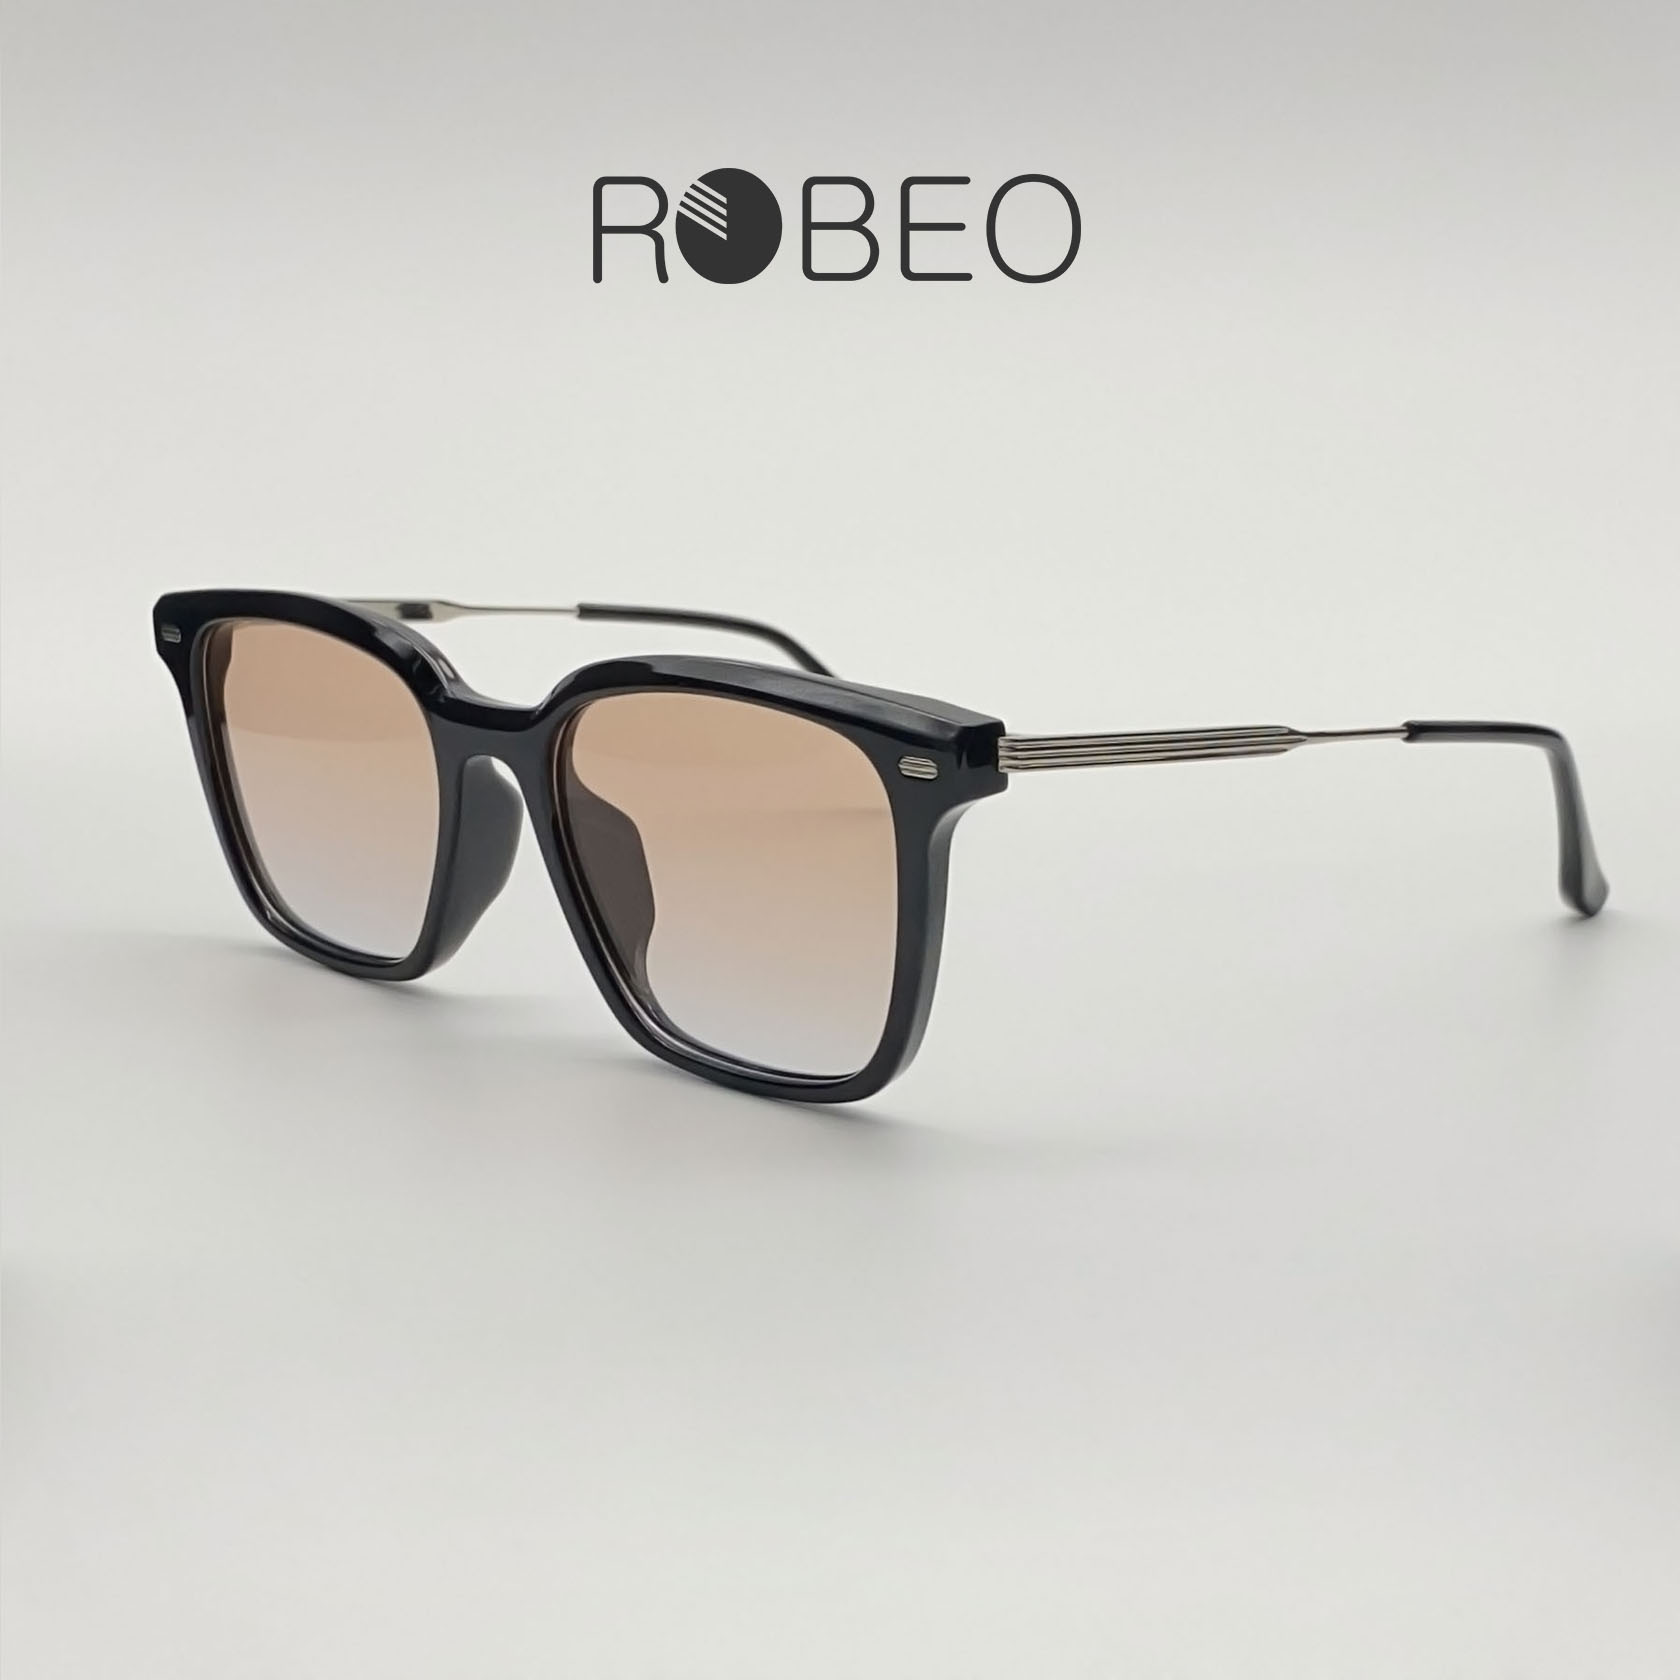 Kính mát thời trang nam nữ ROBEO - R0433, phong cách cổ điển mắt chống tia uv - Fullbox